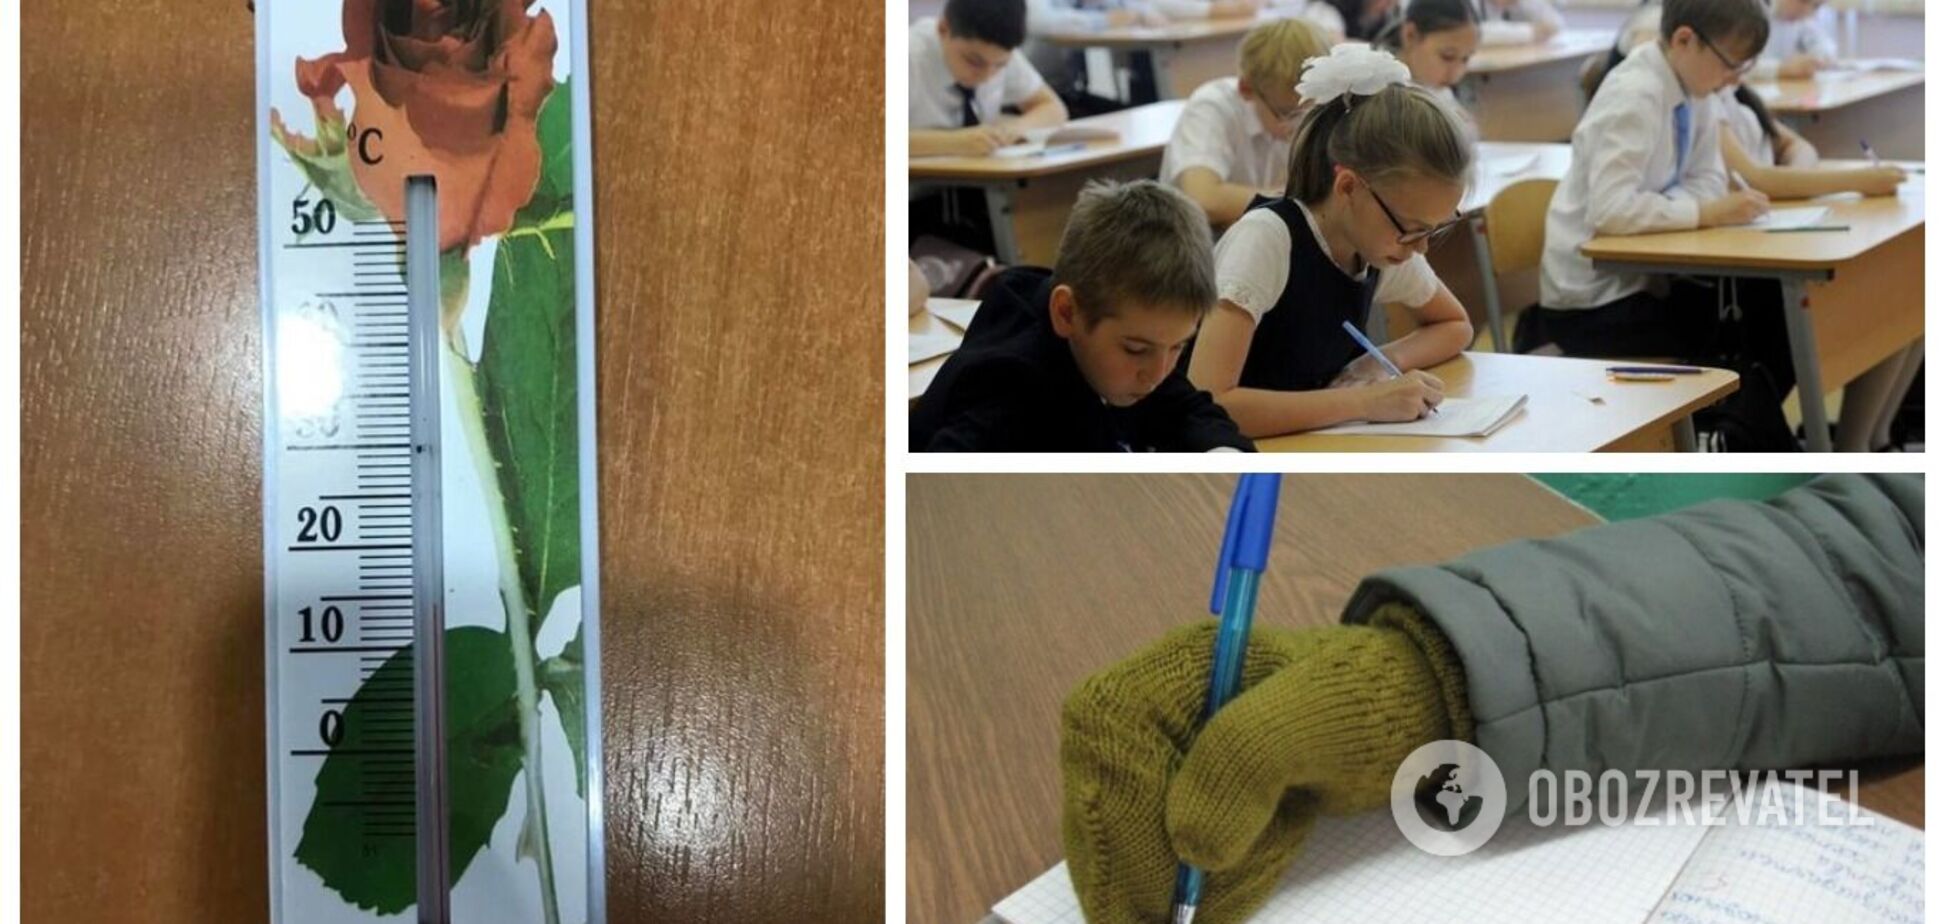 Діти мерзнуть у школах, батьки обурені: скарги на опалення надходять із усіх регіонів України